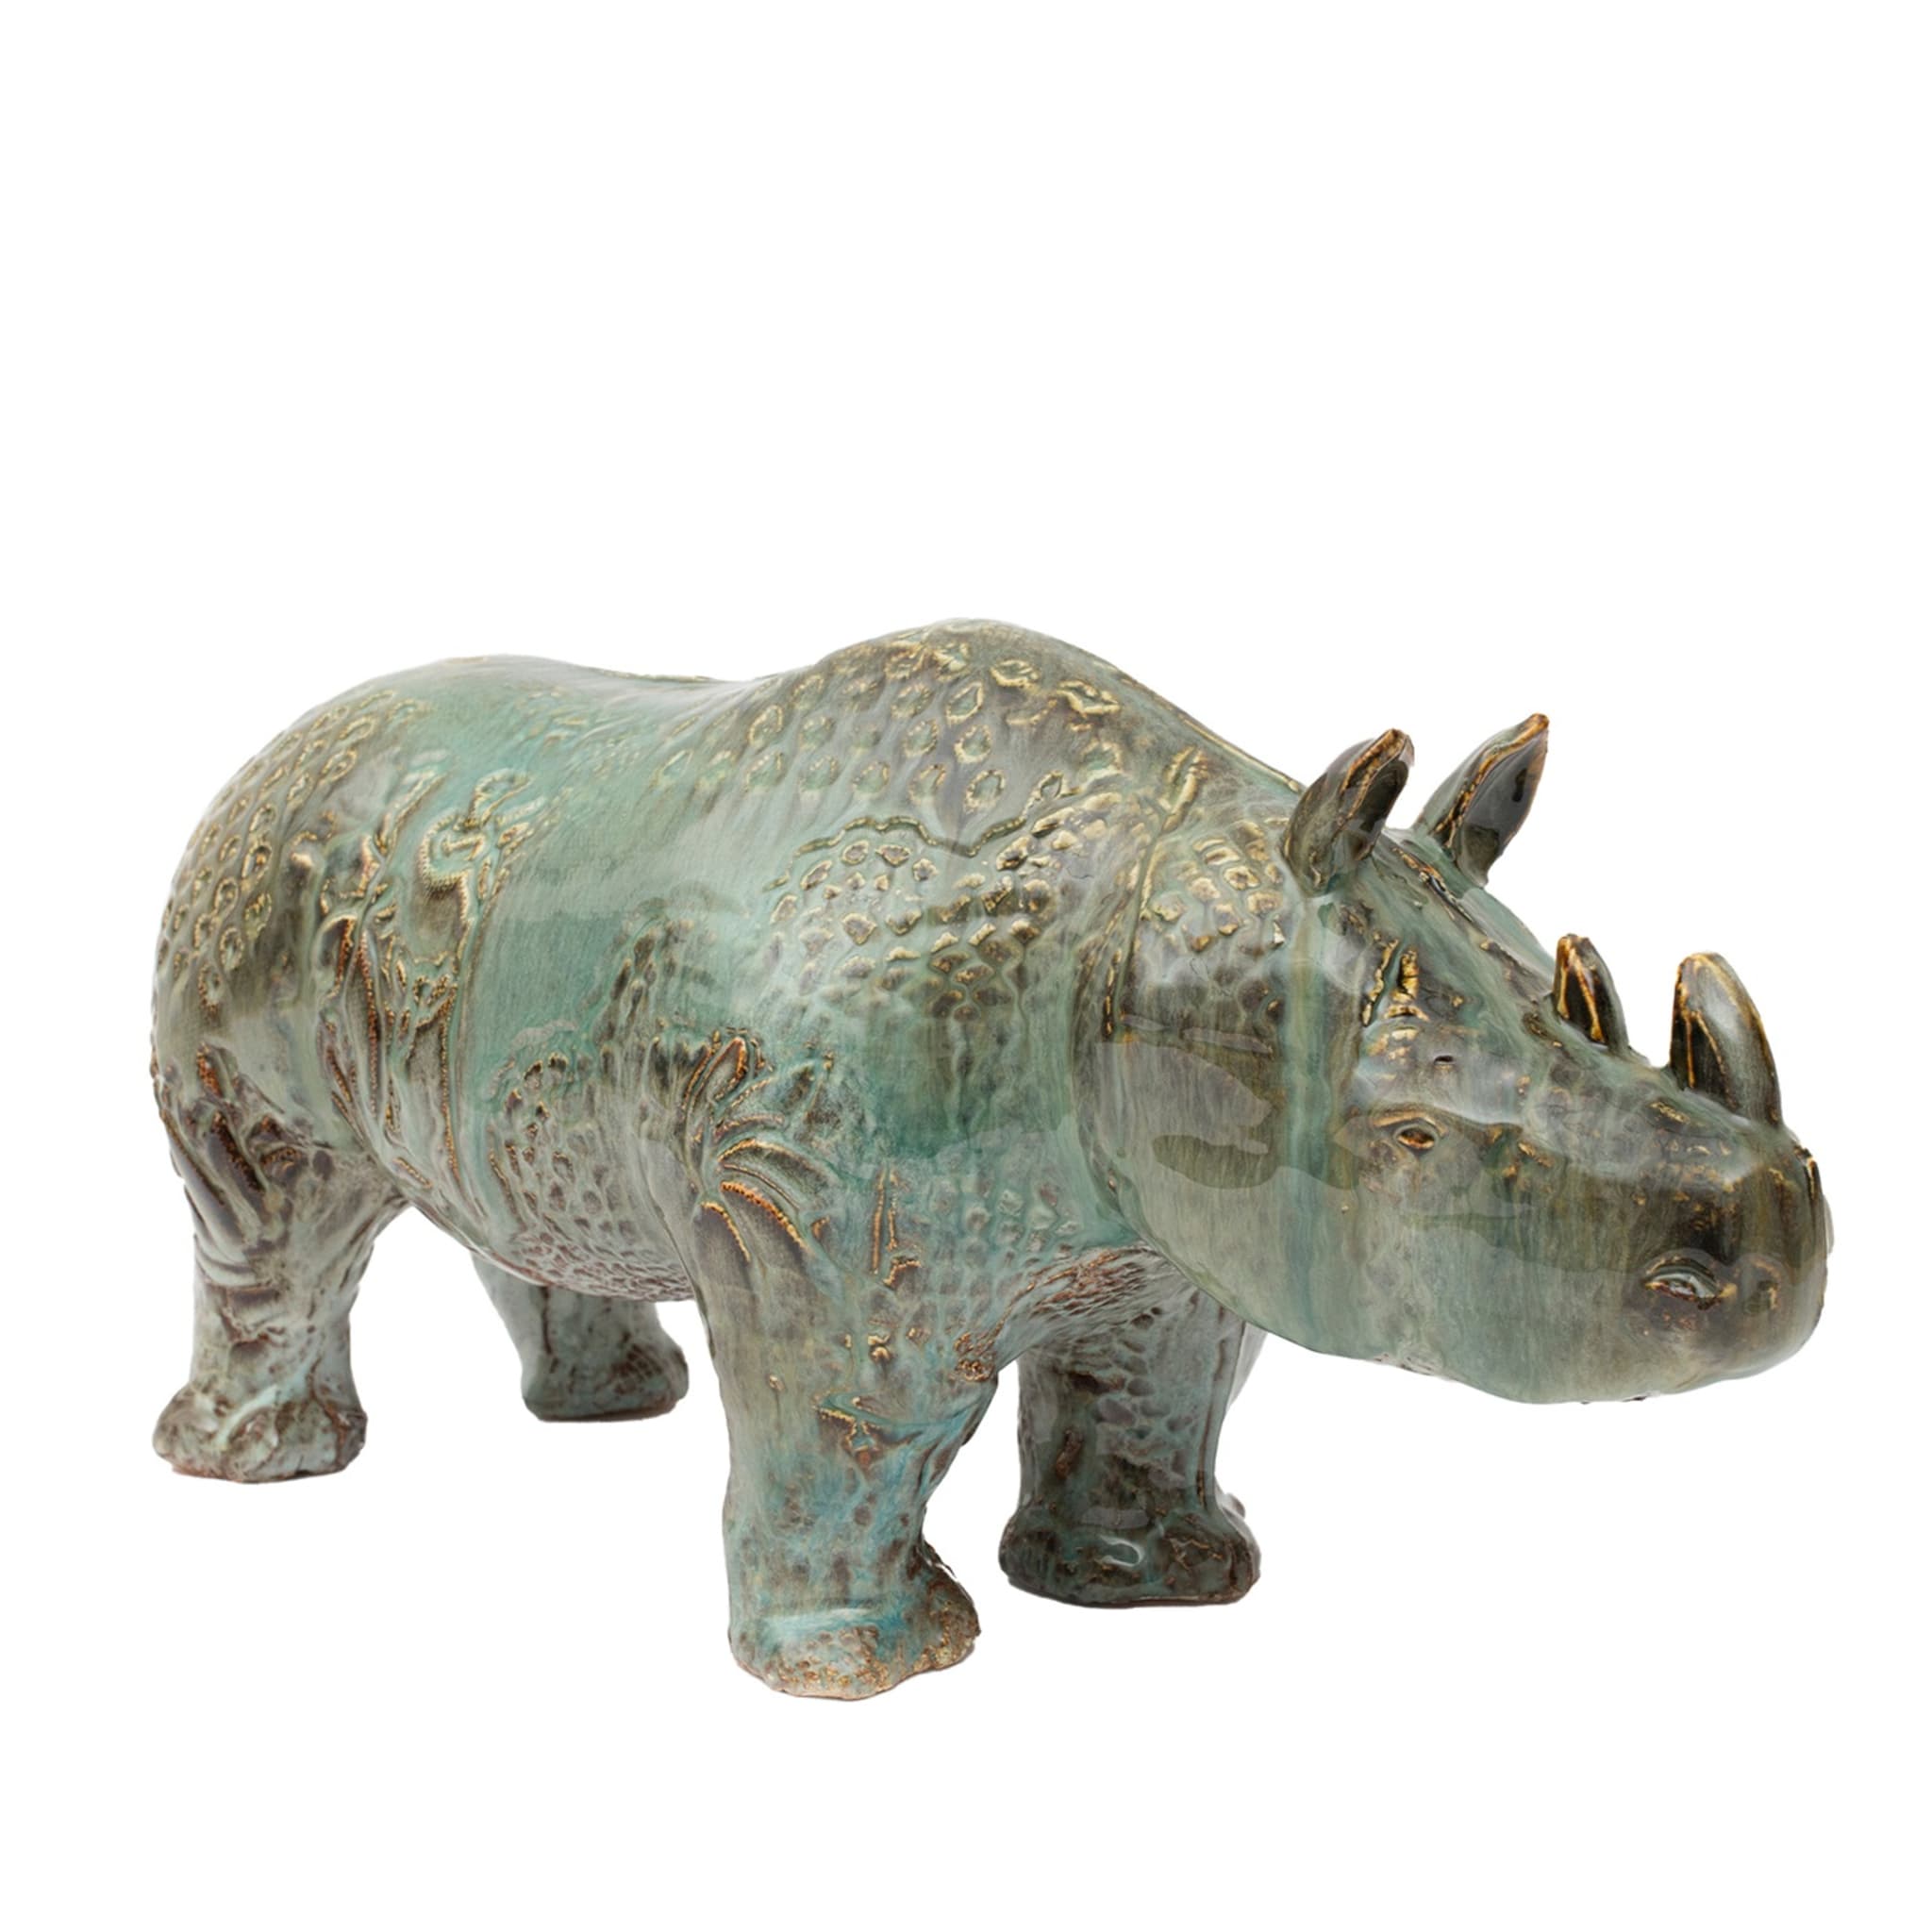 Escultura de rinoceronte nº 1 - Vista principal